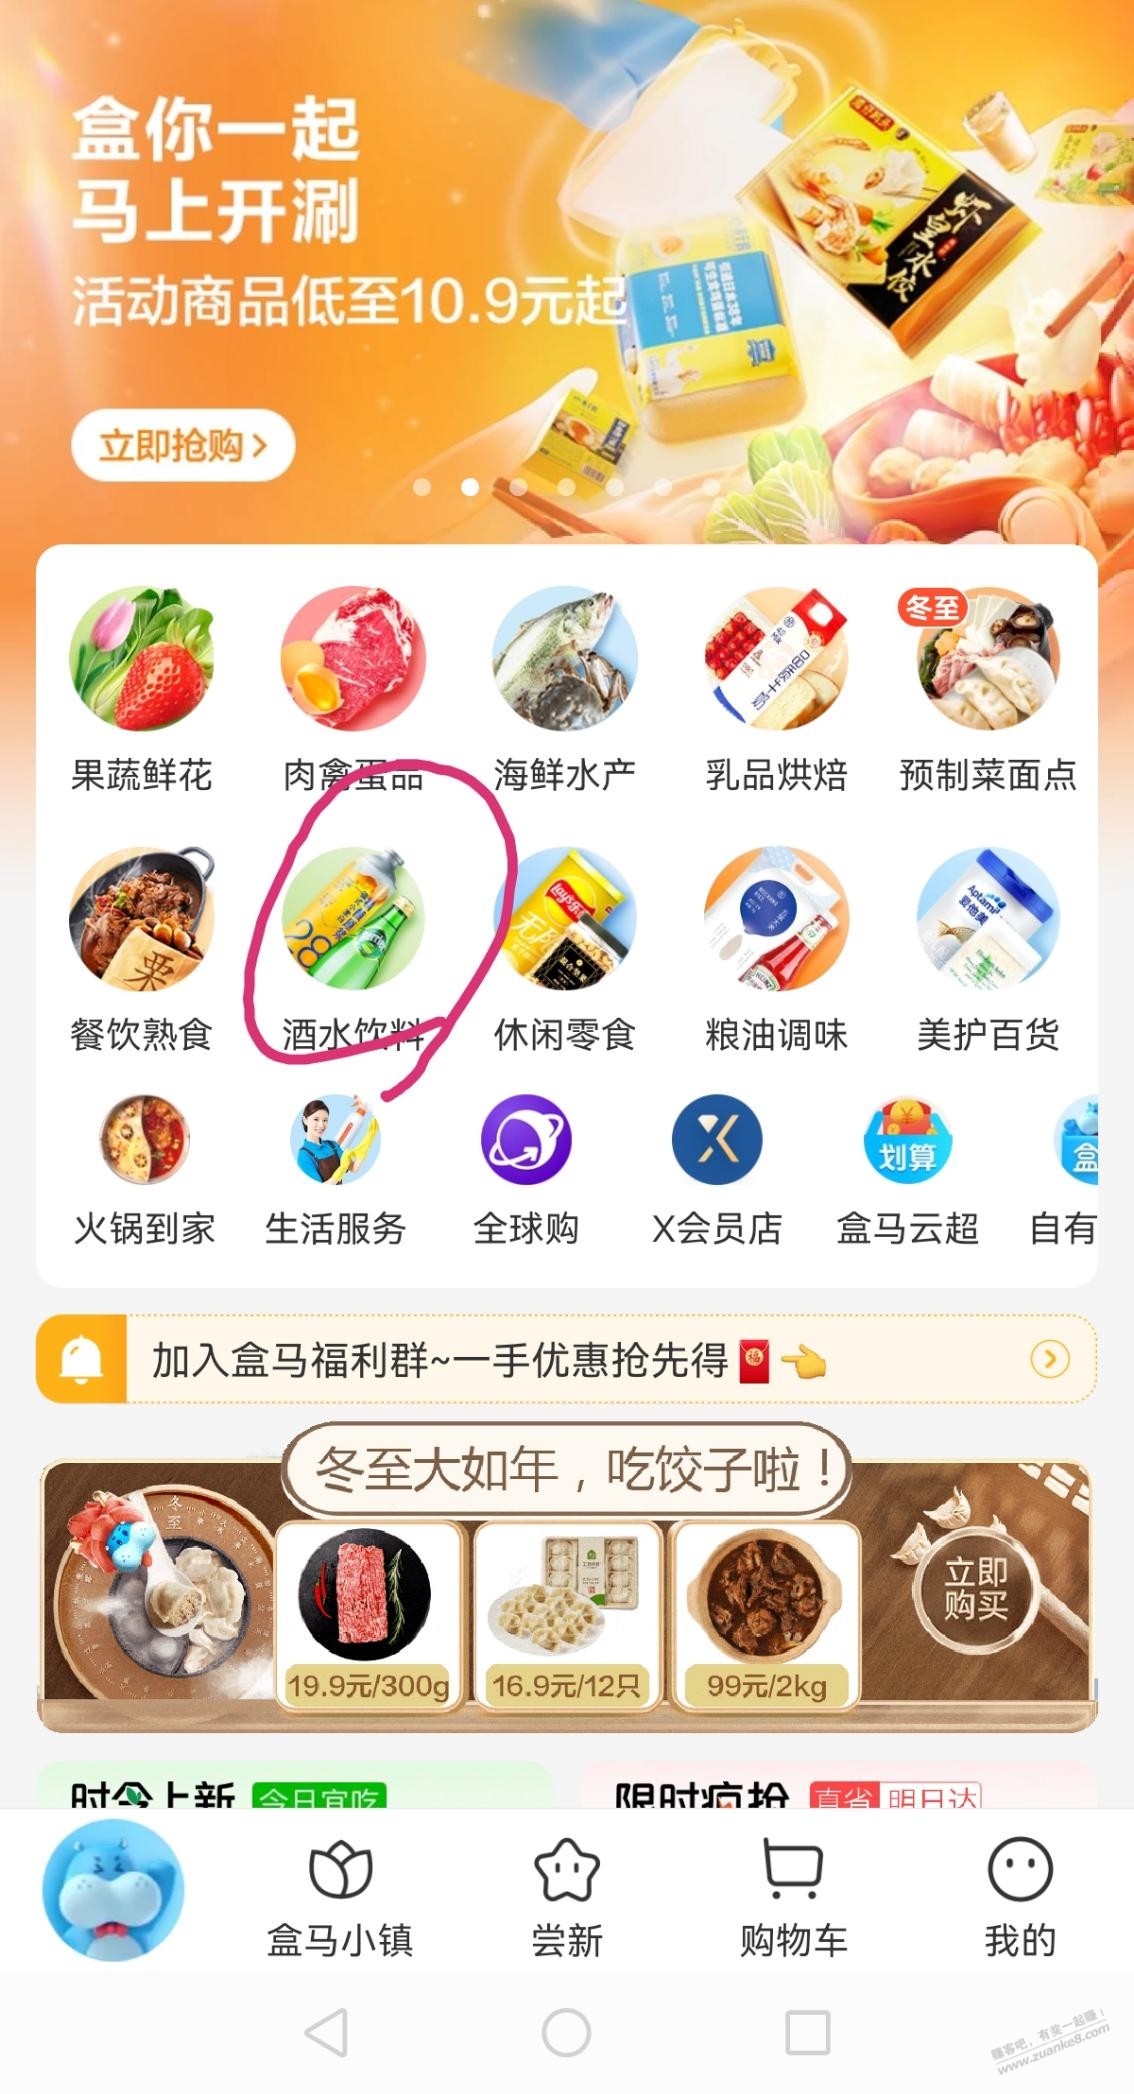 盒马鲜生App中了红酒-惠小助(52huixz.com)